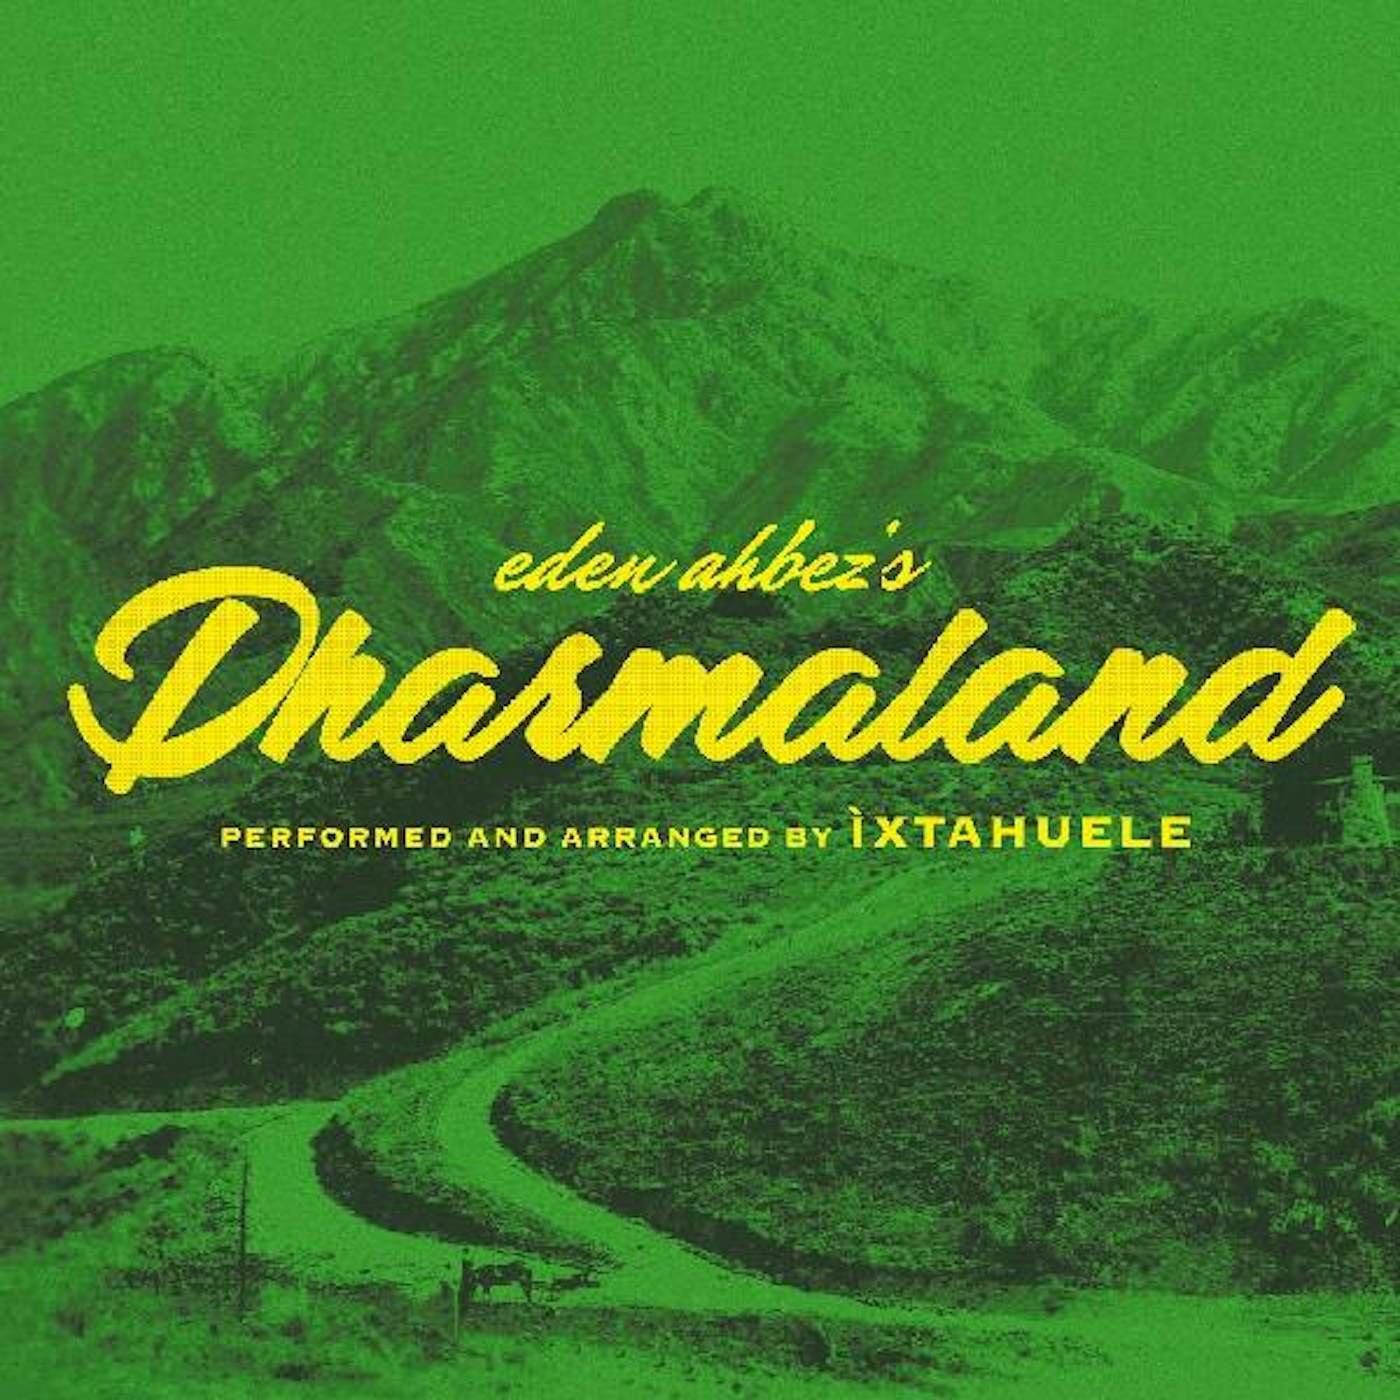 Ìxtahuele Dharmaland CD